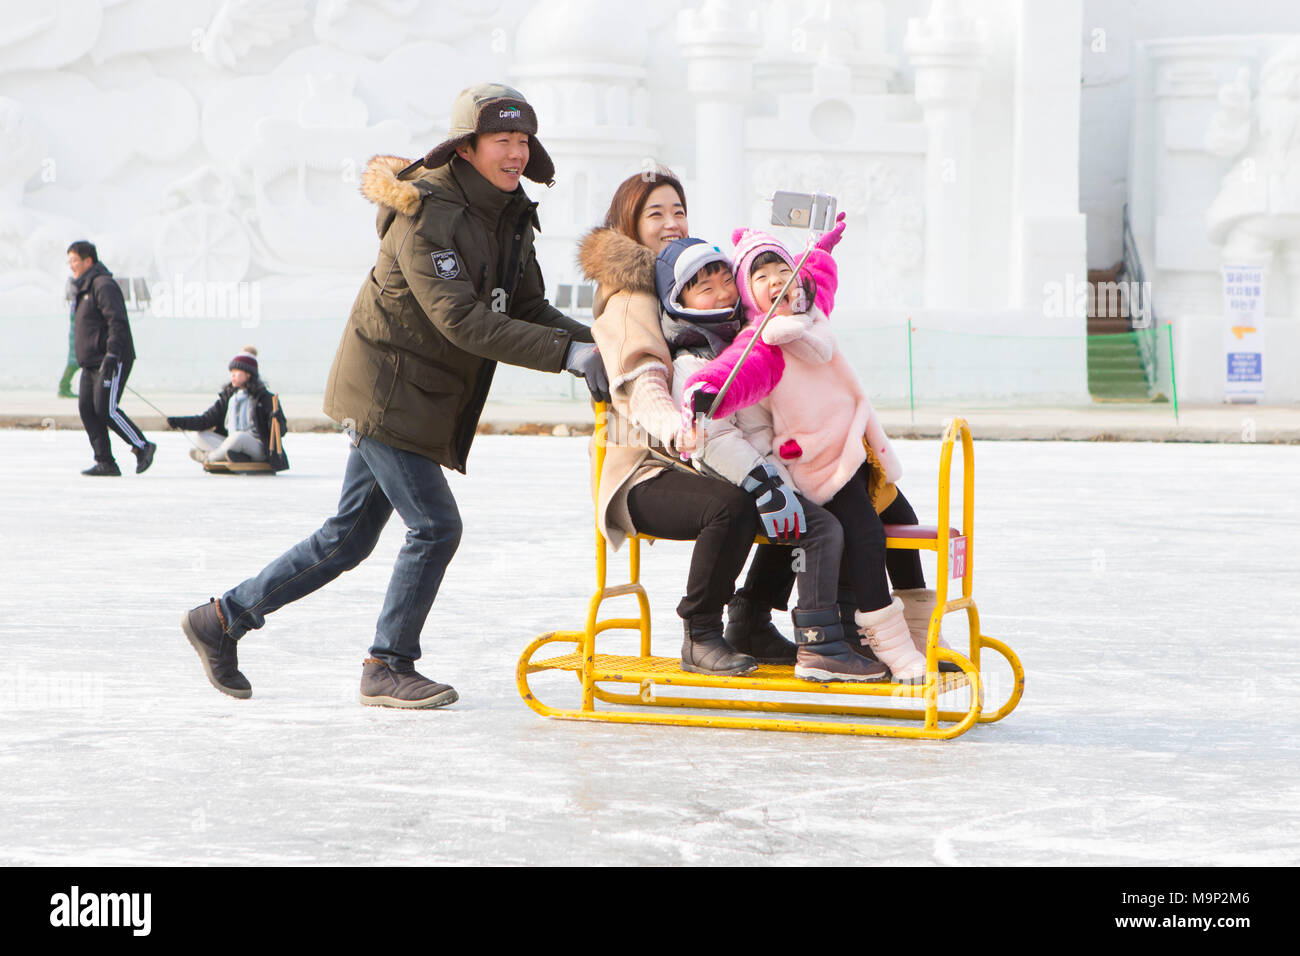 Un asiatico cerca famiglia è divertirsi facendo un selfie su una slitta di gruppo presso il fiume congelato al Hwacheon Sancheoneo Festival di ghiaccio. Il Hwacheon Sancheoneo Festival di ghiaccio è una tradizione per il popolo coreano. Ogni anno nel mese di gennaio la folla si riuniranno presso il fiume congelato per celebrare il freddo e la neve dell'inverno. Attrazione principale è la pesca sul ghiaccio. Giovani e vecchi attendere pazientemente su un piccolo buco nel ghiaccio per una trota di mordere. In tende che possono ottenere il pesce grigliato dopo che loro sono mangiati. Tra le altre attività sono corse in slittino e pattinaggio sul ghiaccio. La vicina regione Pyeongchang ospiterà le Olimpiadi Invernali nel Foto Stock